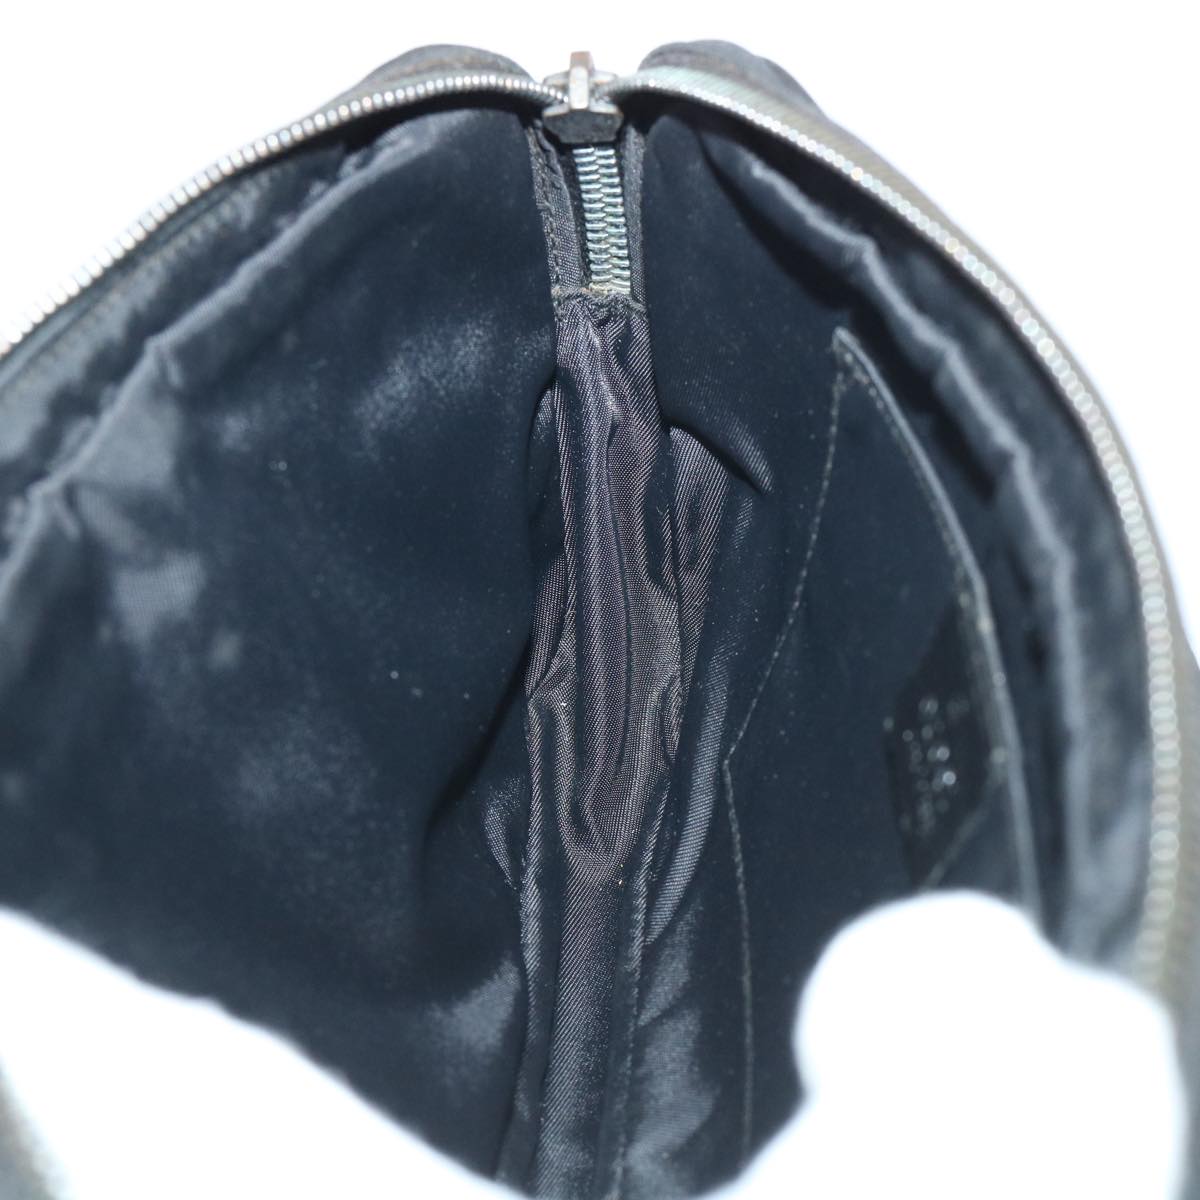 GUCCI Guccissima Waist bag Nylon Leather Black 162417 Auth tb905